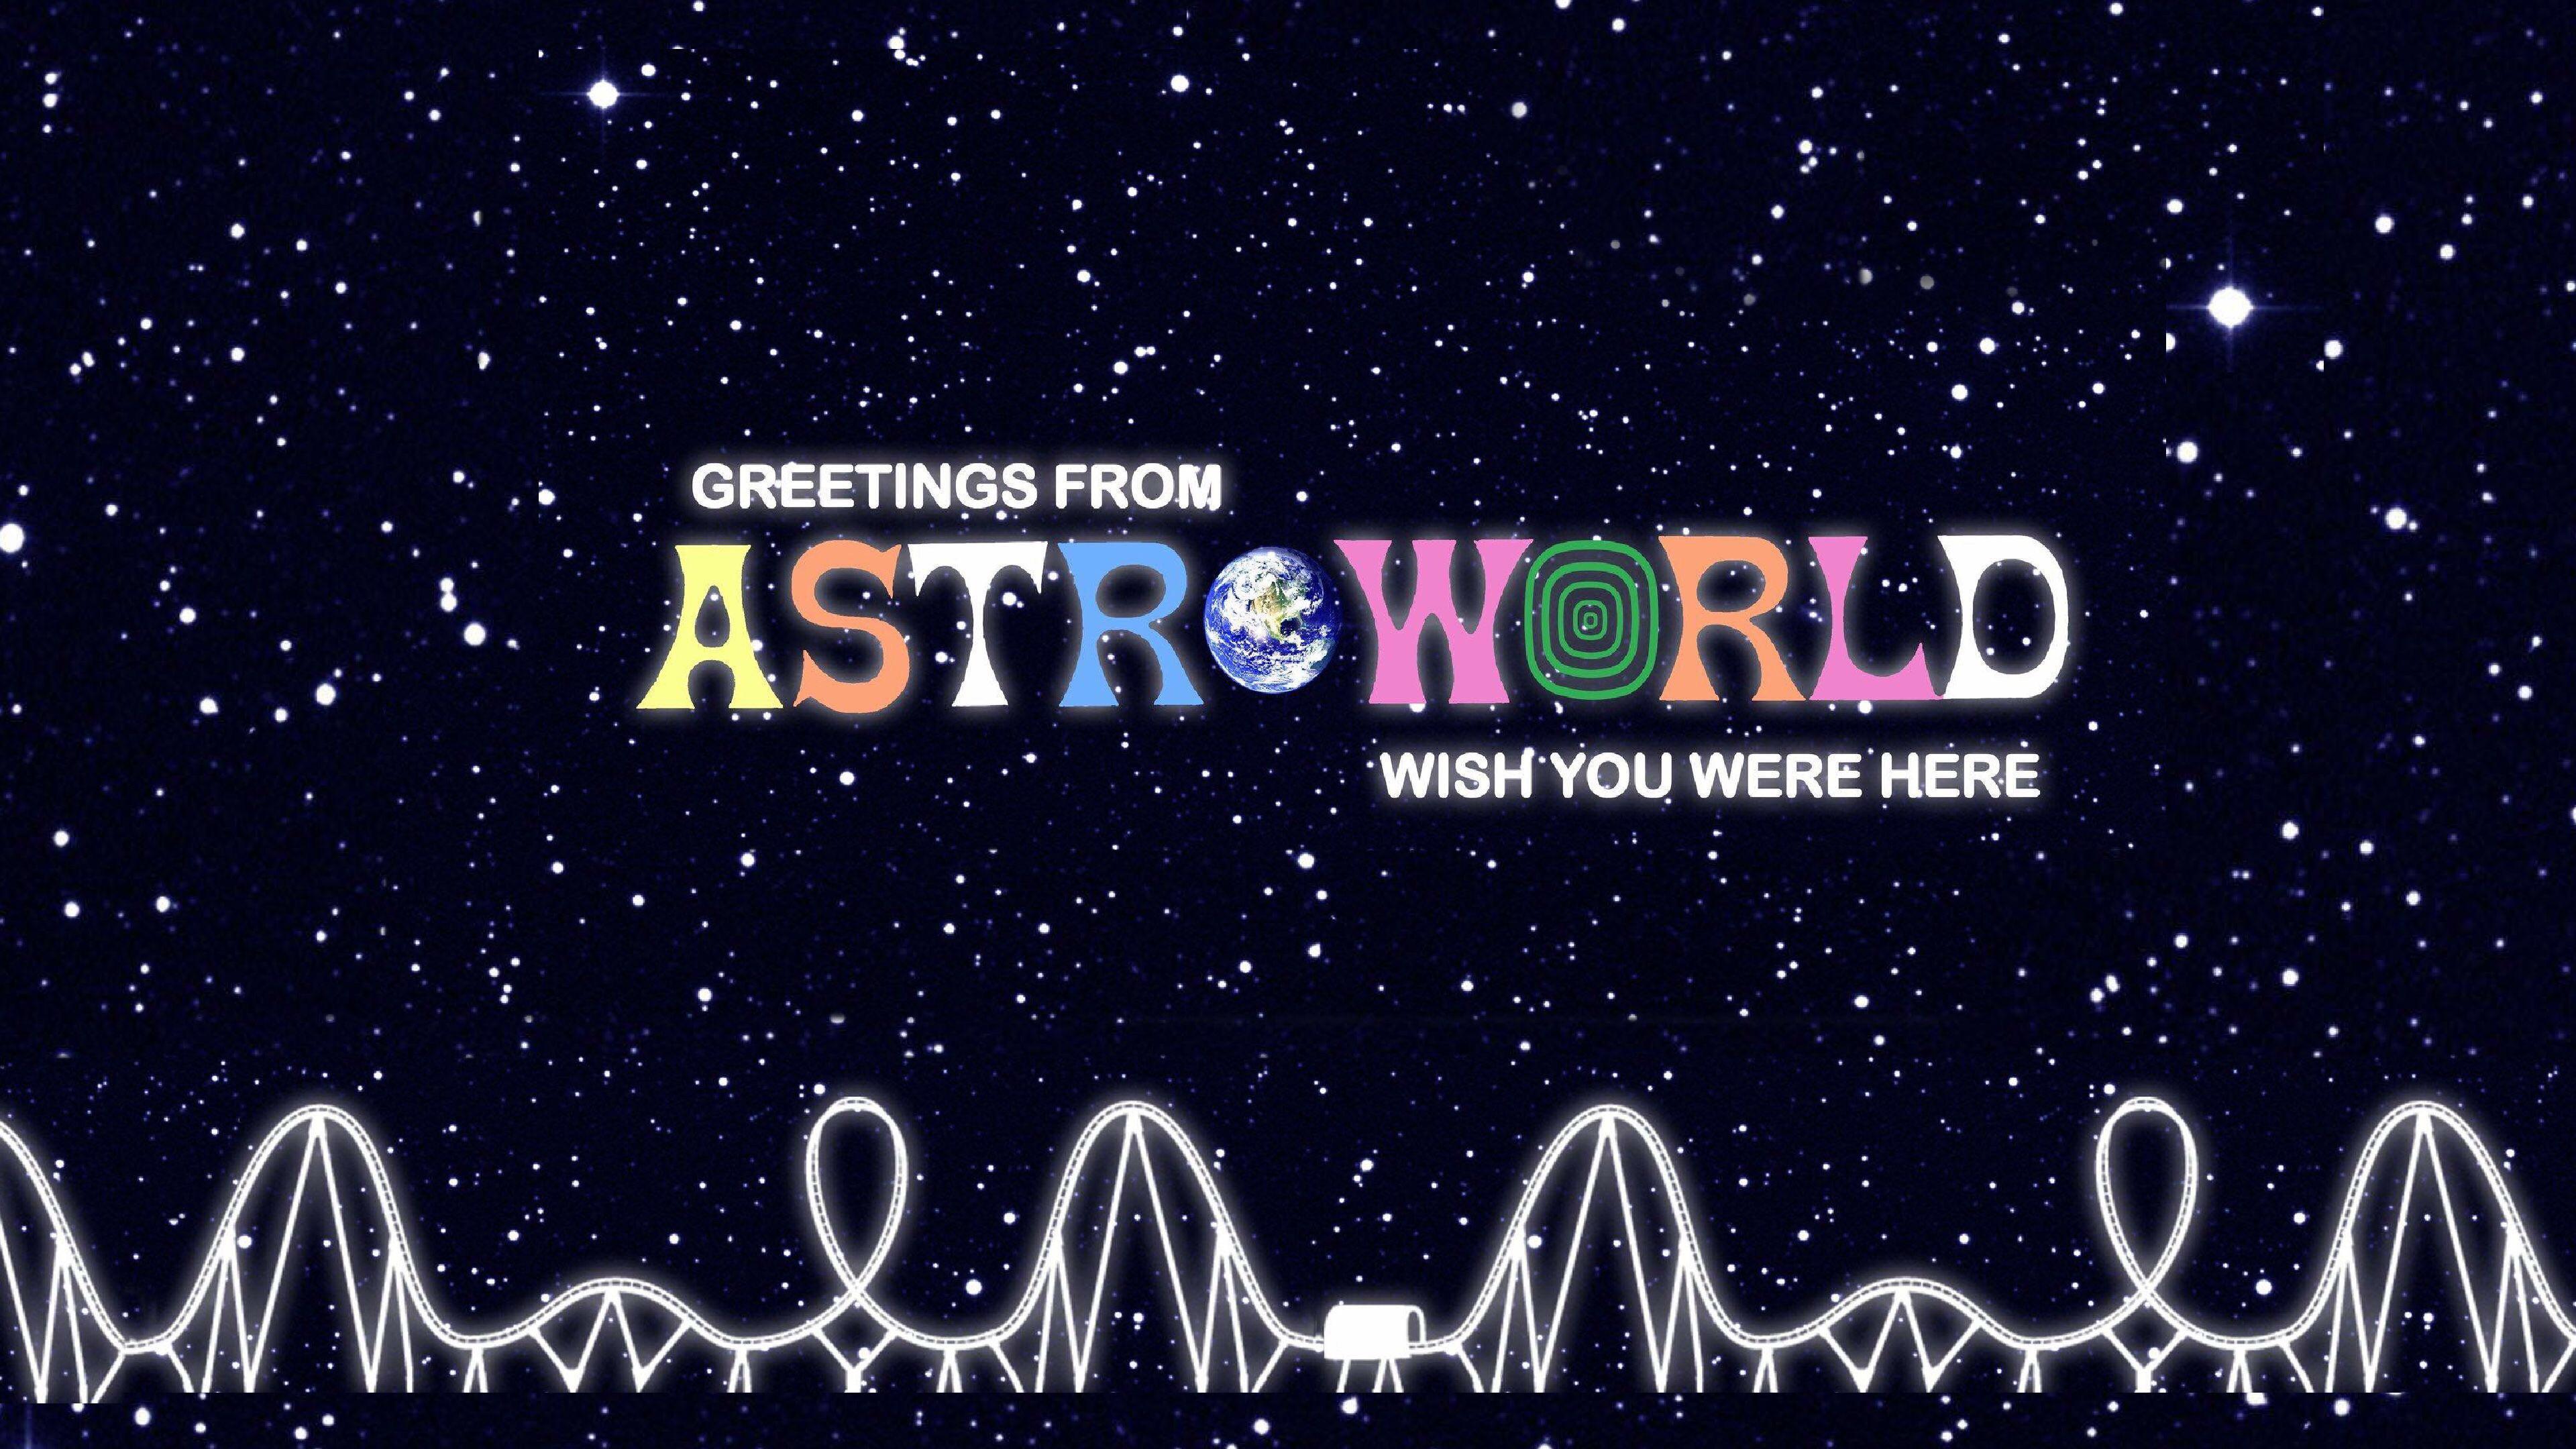 Travis Scott  Astroworld  Smartphone Wallpaper by Adobe Ph  Flickr